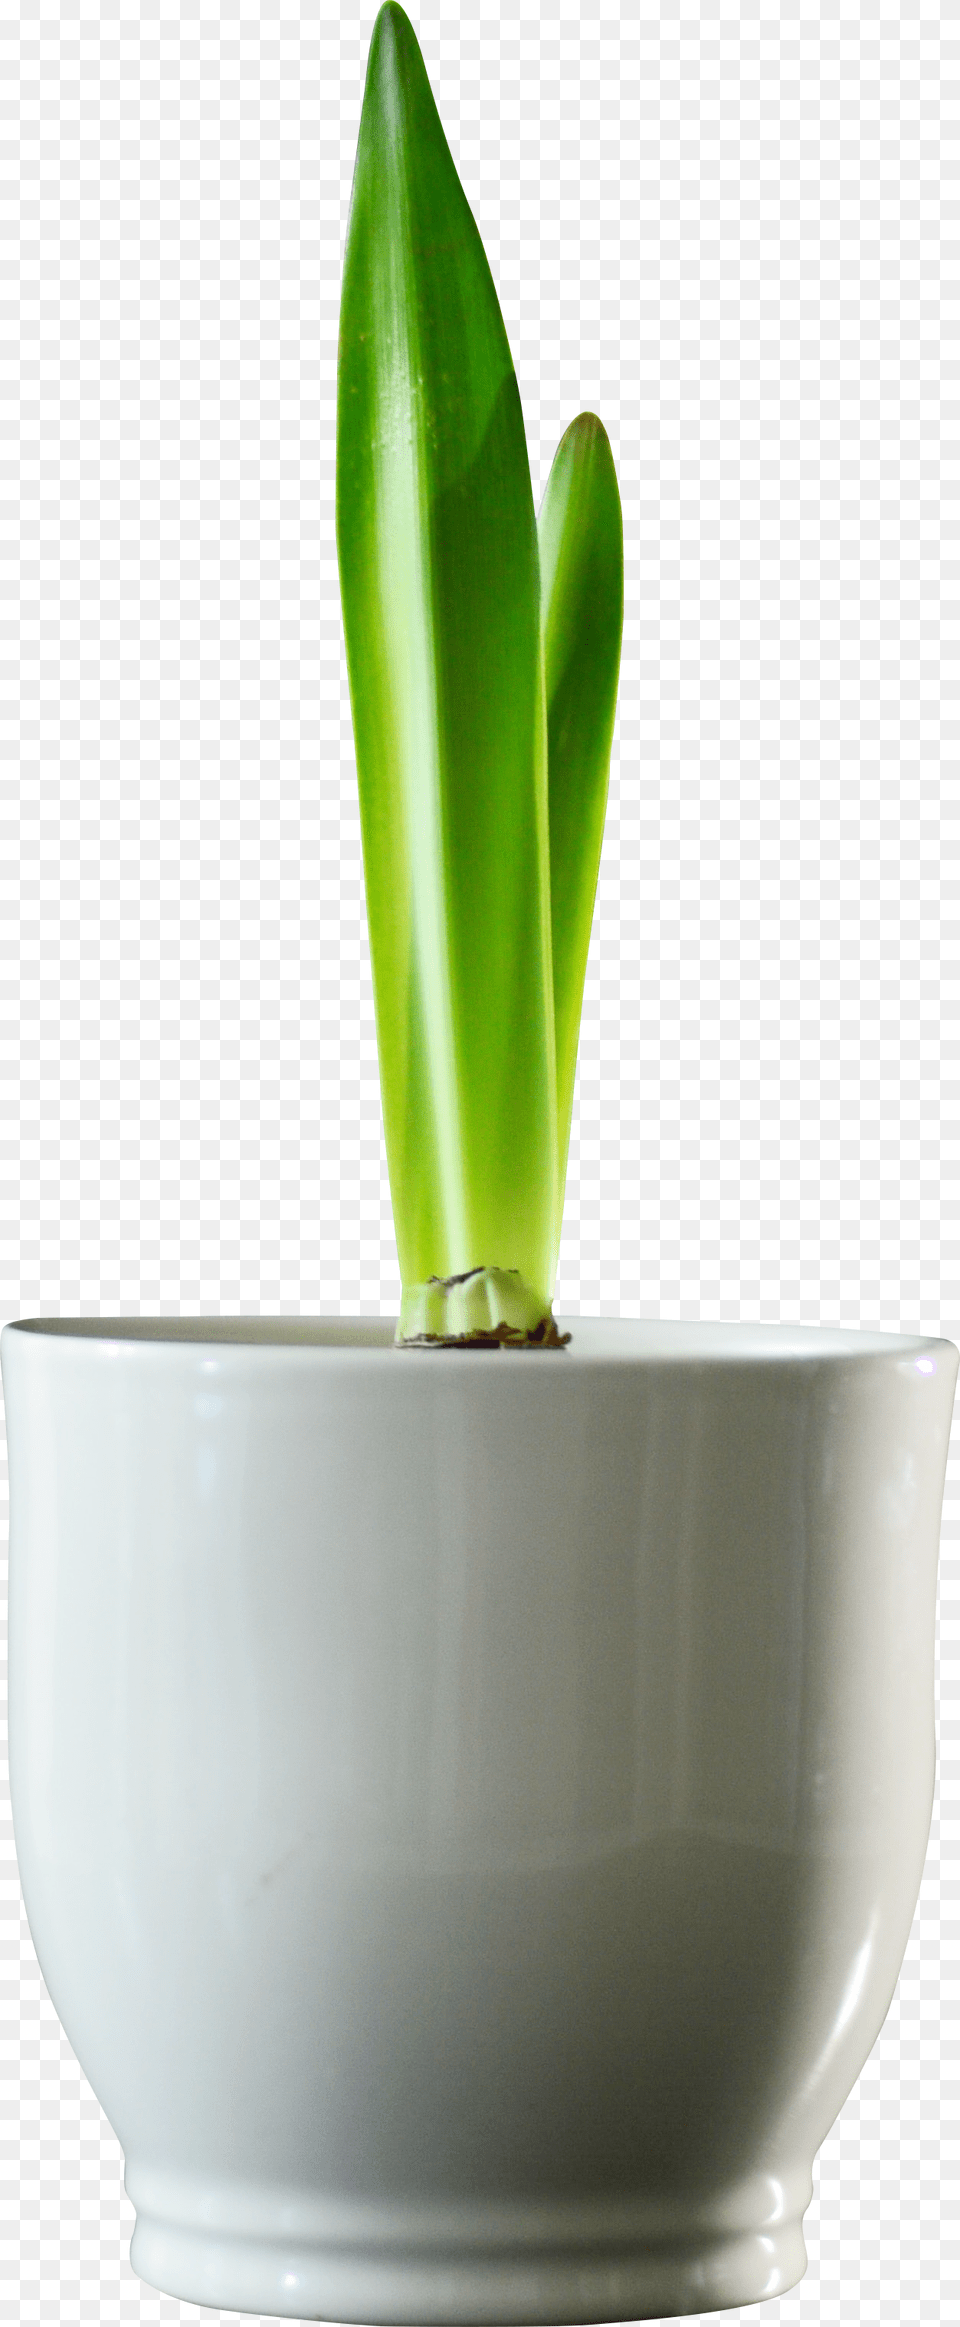 Vase, Bud, Flower, Leaf, Plant Png